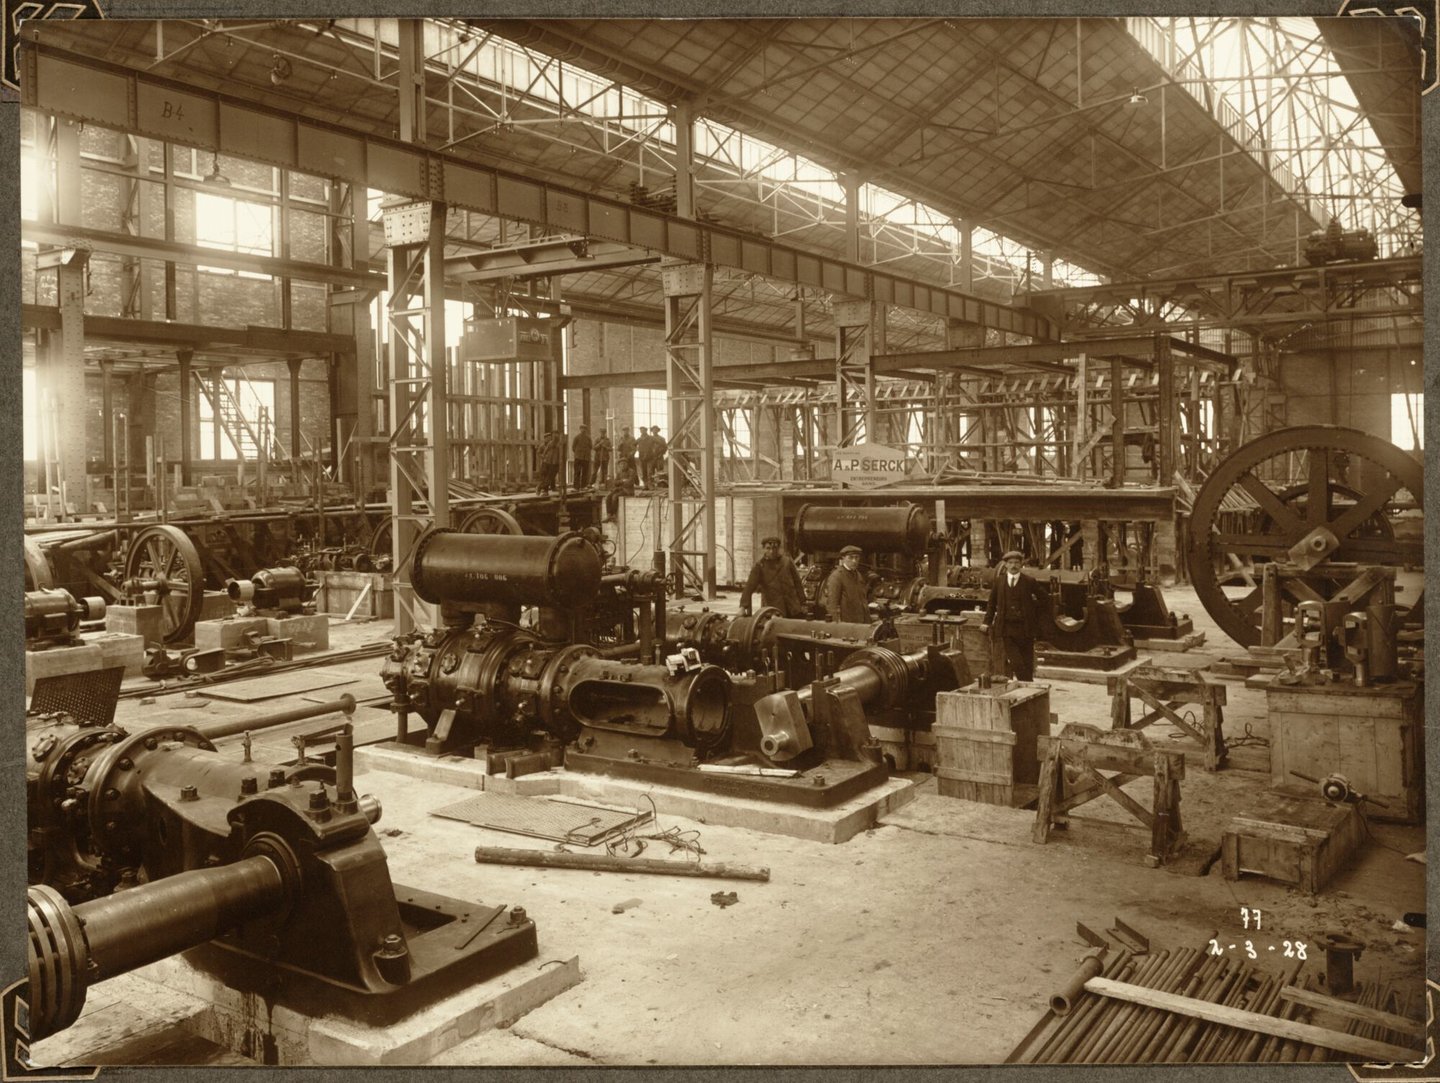 Bouw van compressoren en transformatorenoverspanning van ammoniakfabriek van cokesfabriek Kuhlmann in Zelzate